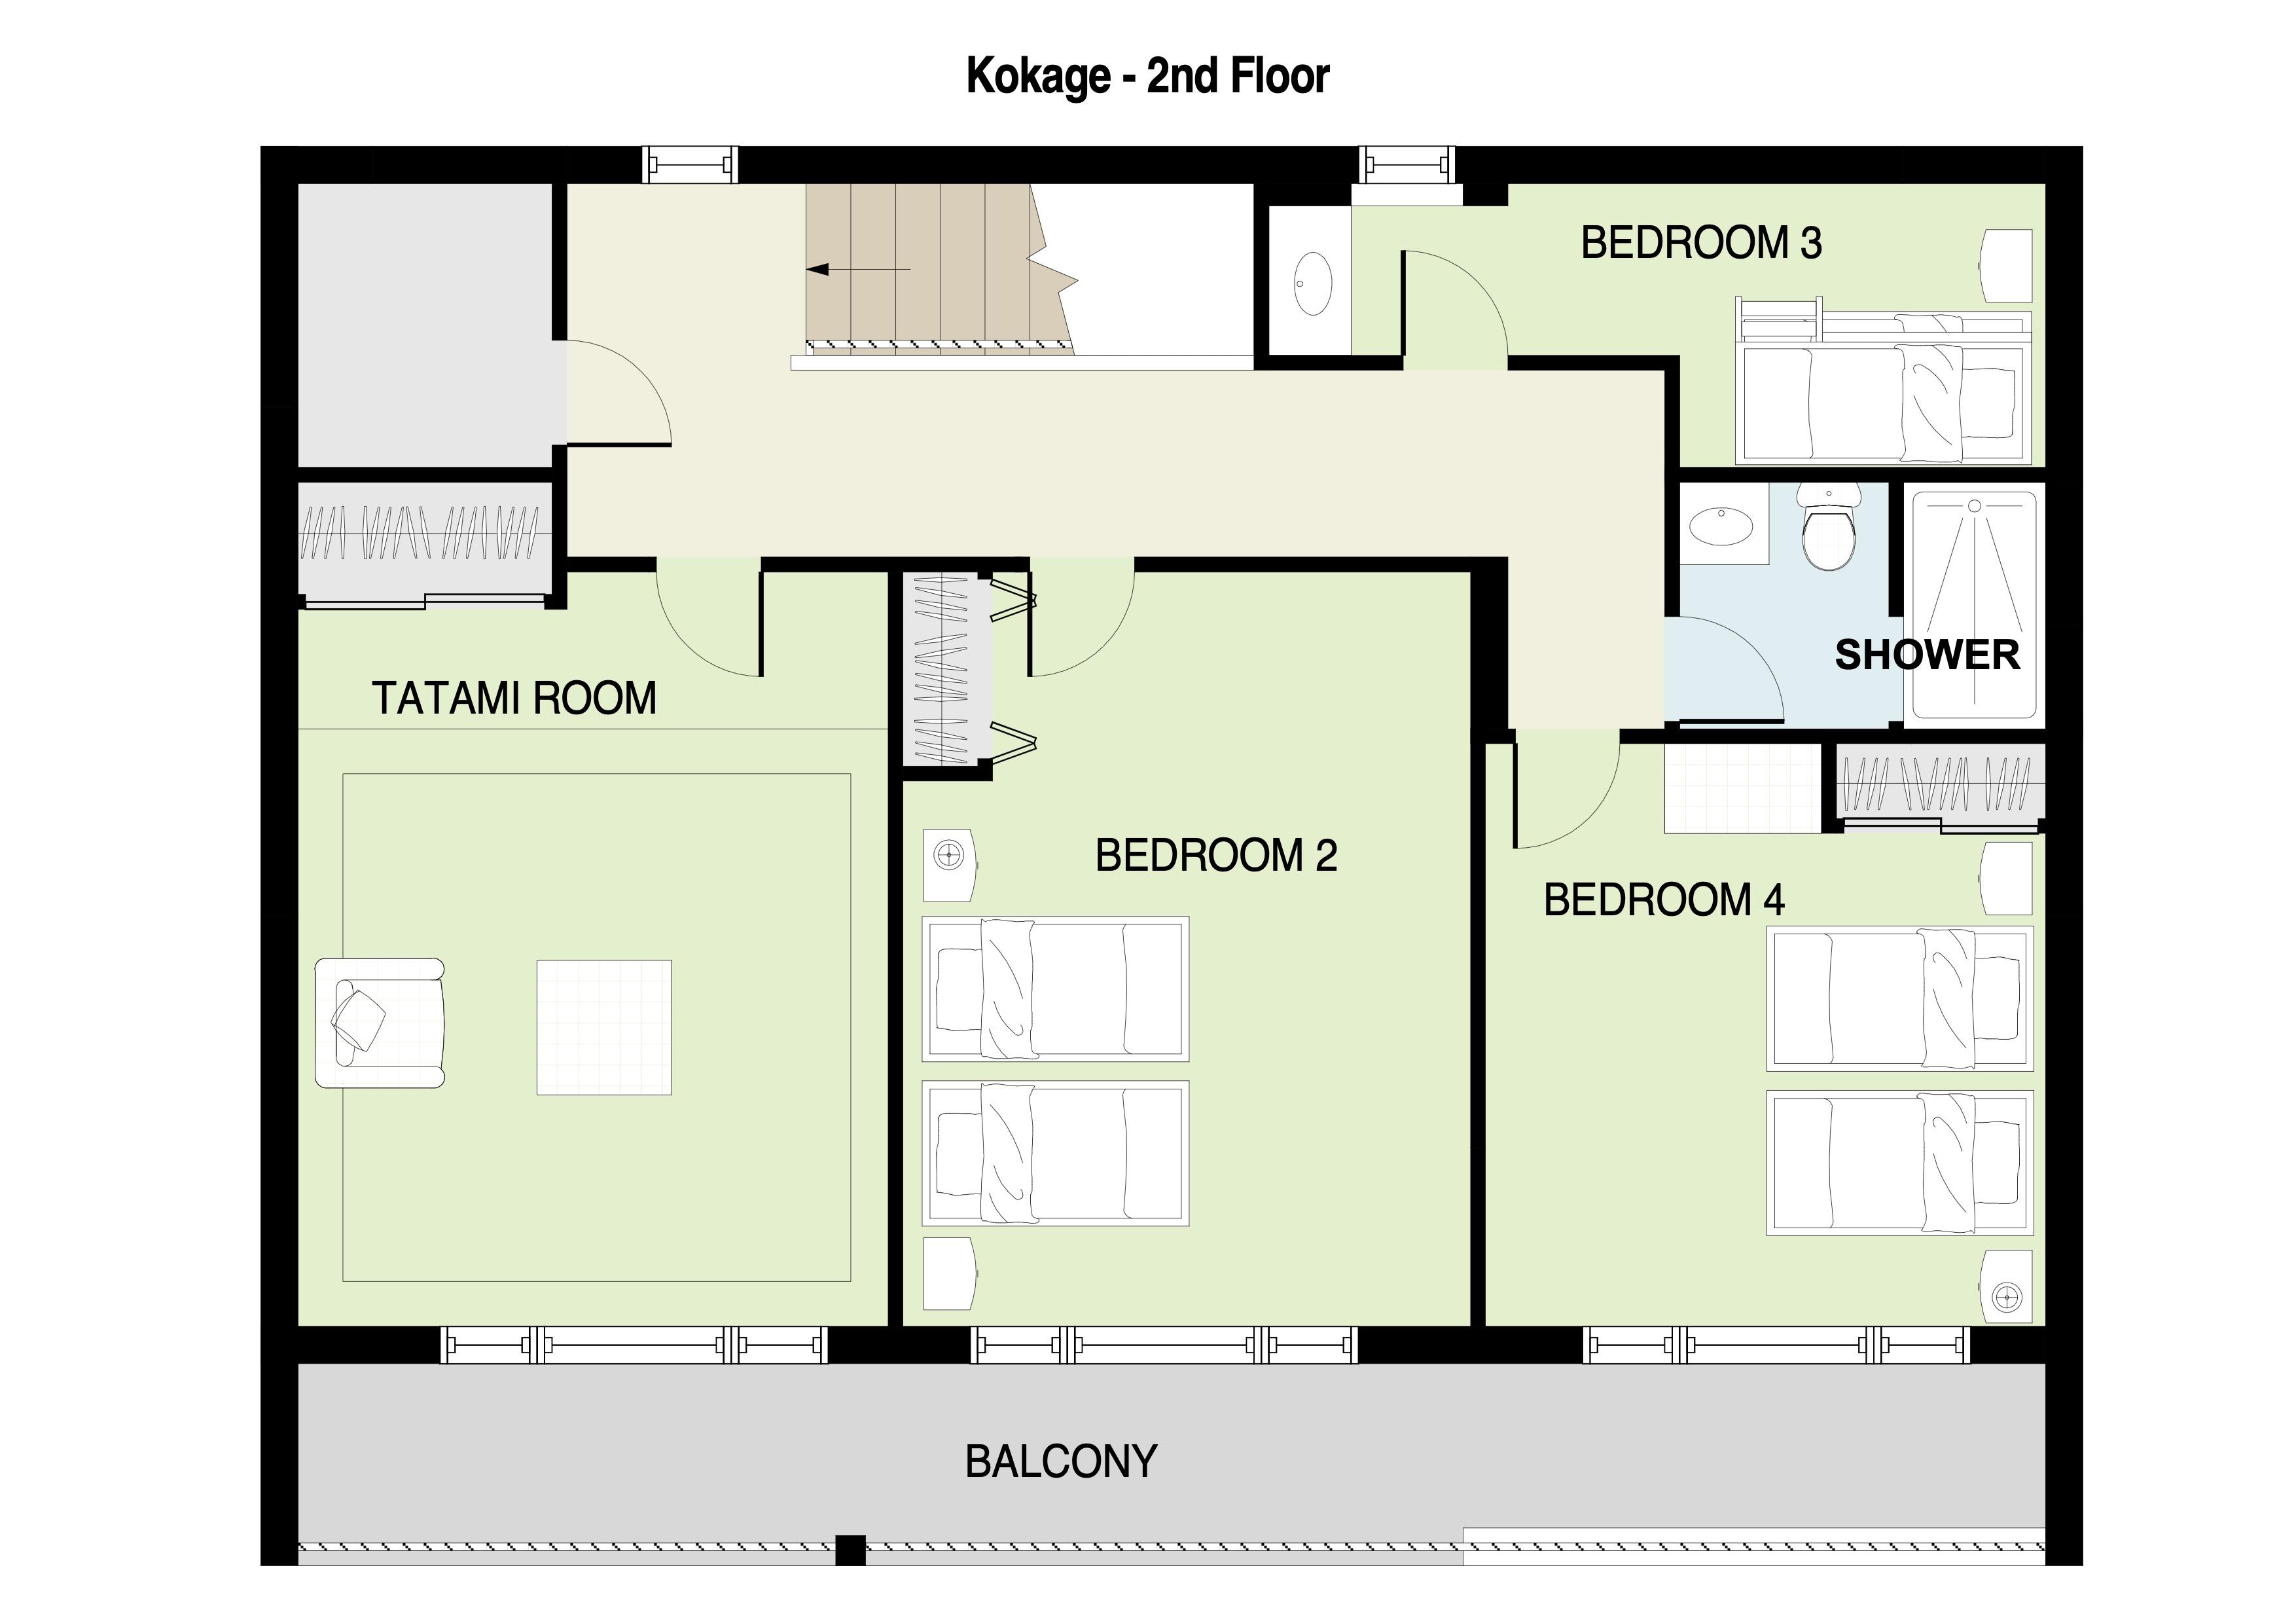 Kokage 2nd floor plan